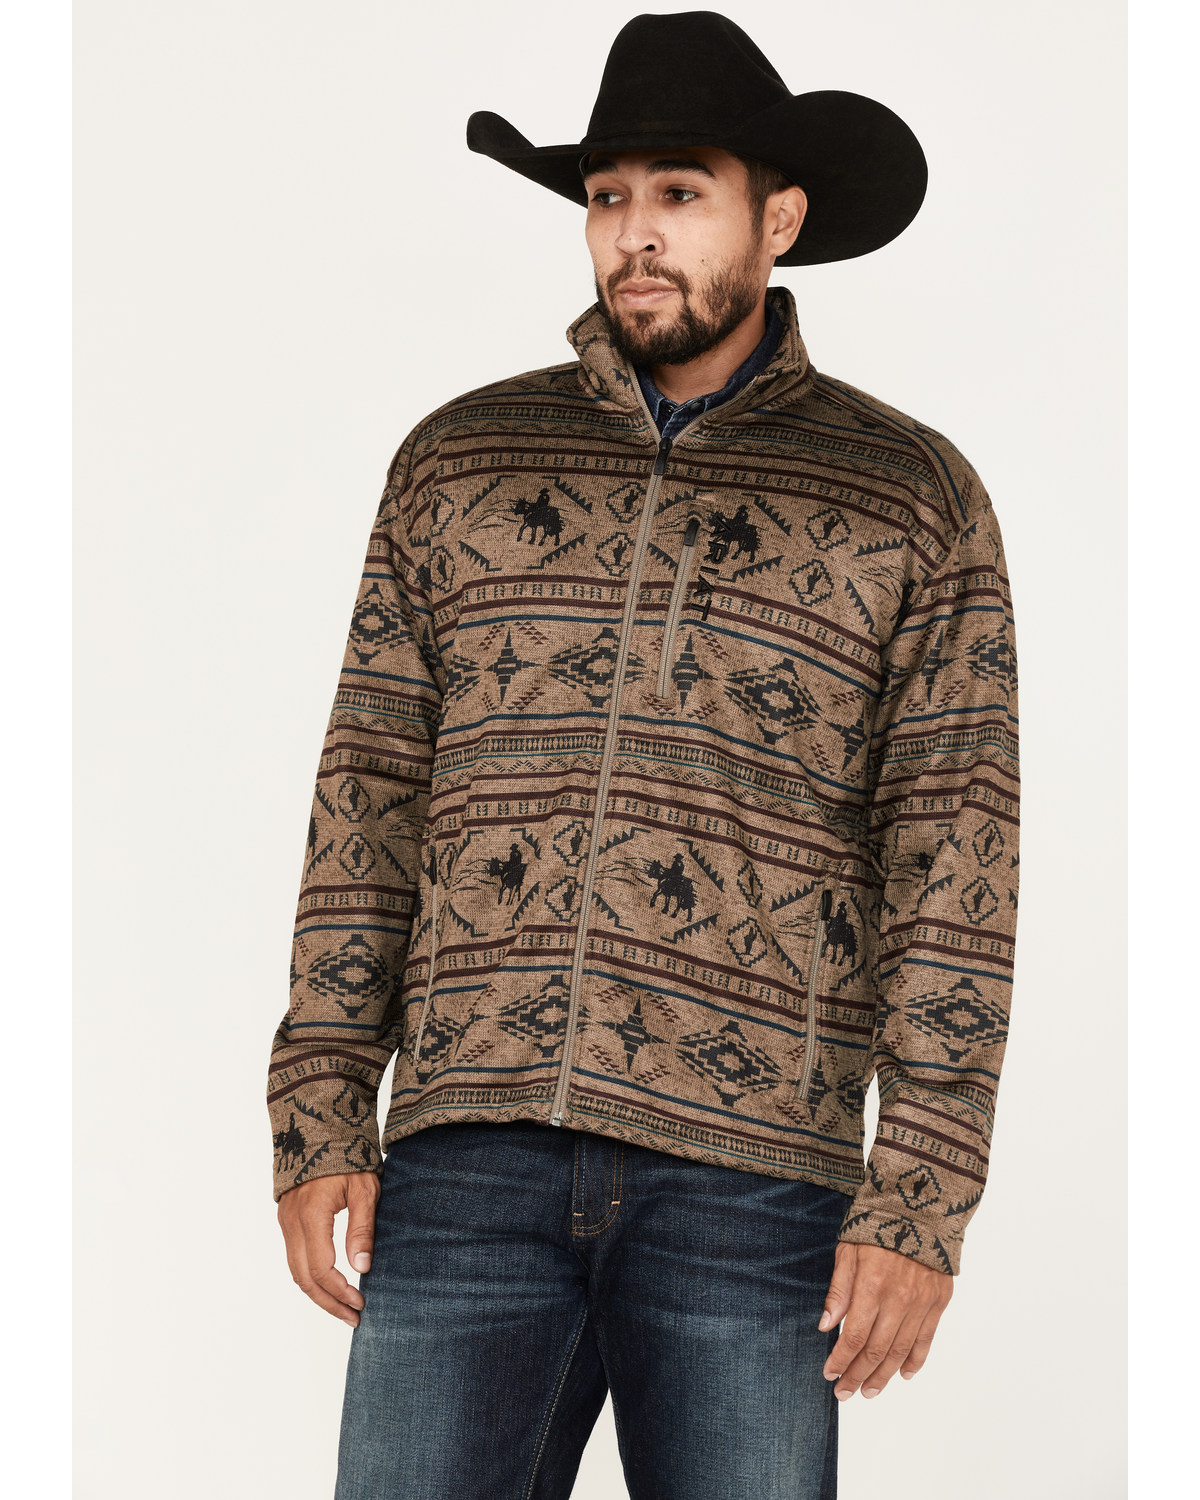 Ariat Men's Caldwell Southwestern Zip Front Reinforced Fleece Sweatshirt